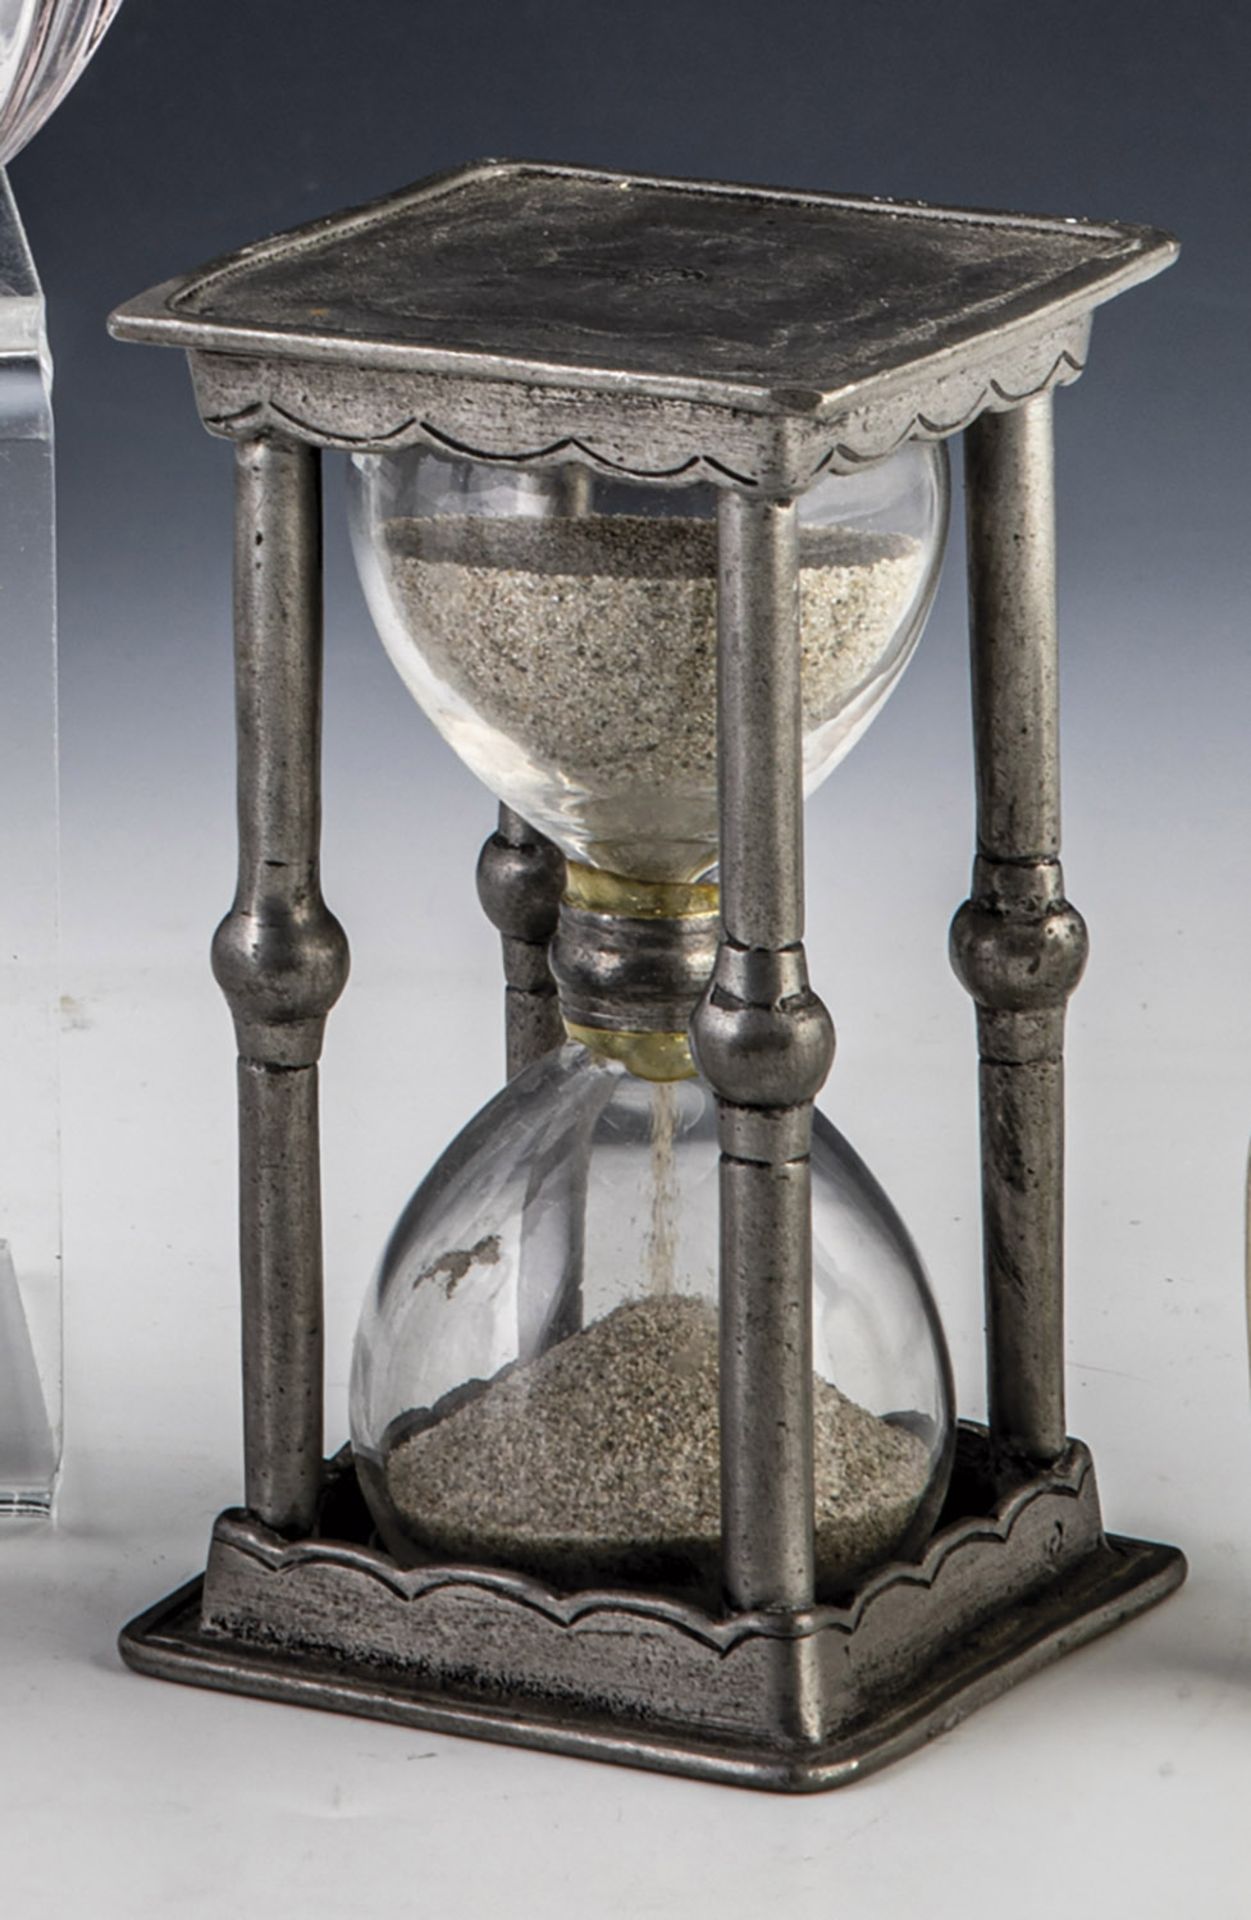 Stundenglas in Zinnhalterung